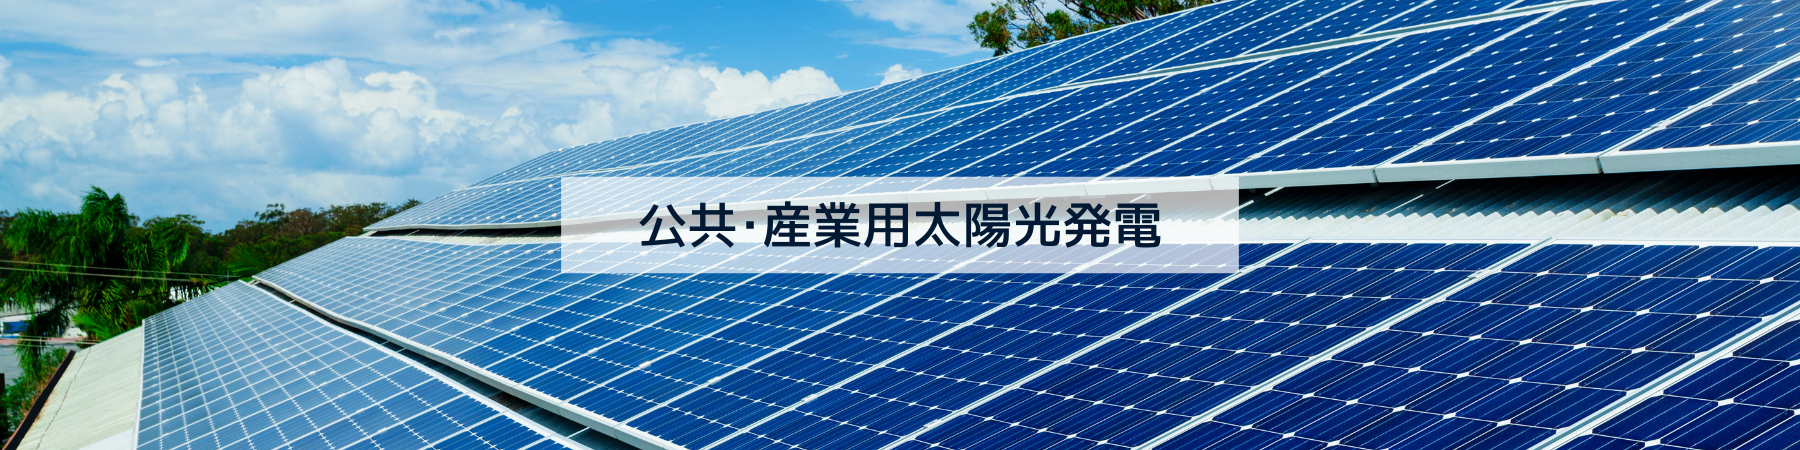 公共・産業用太陽光発電